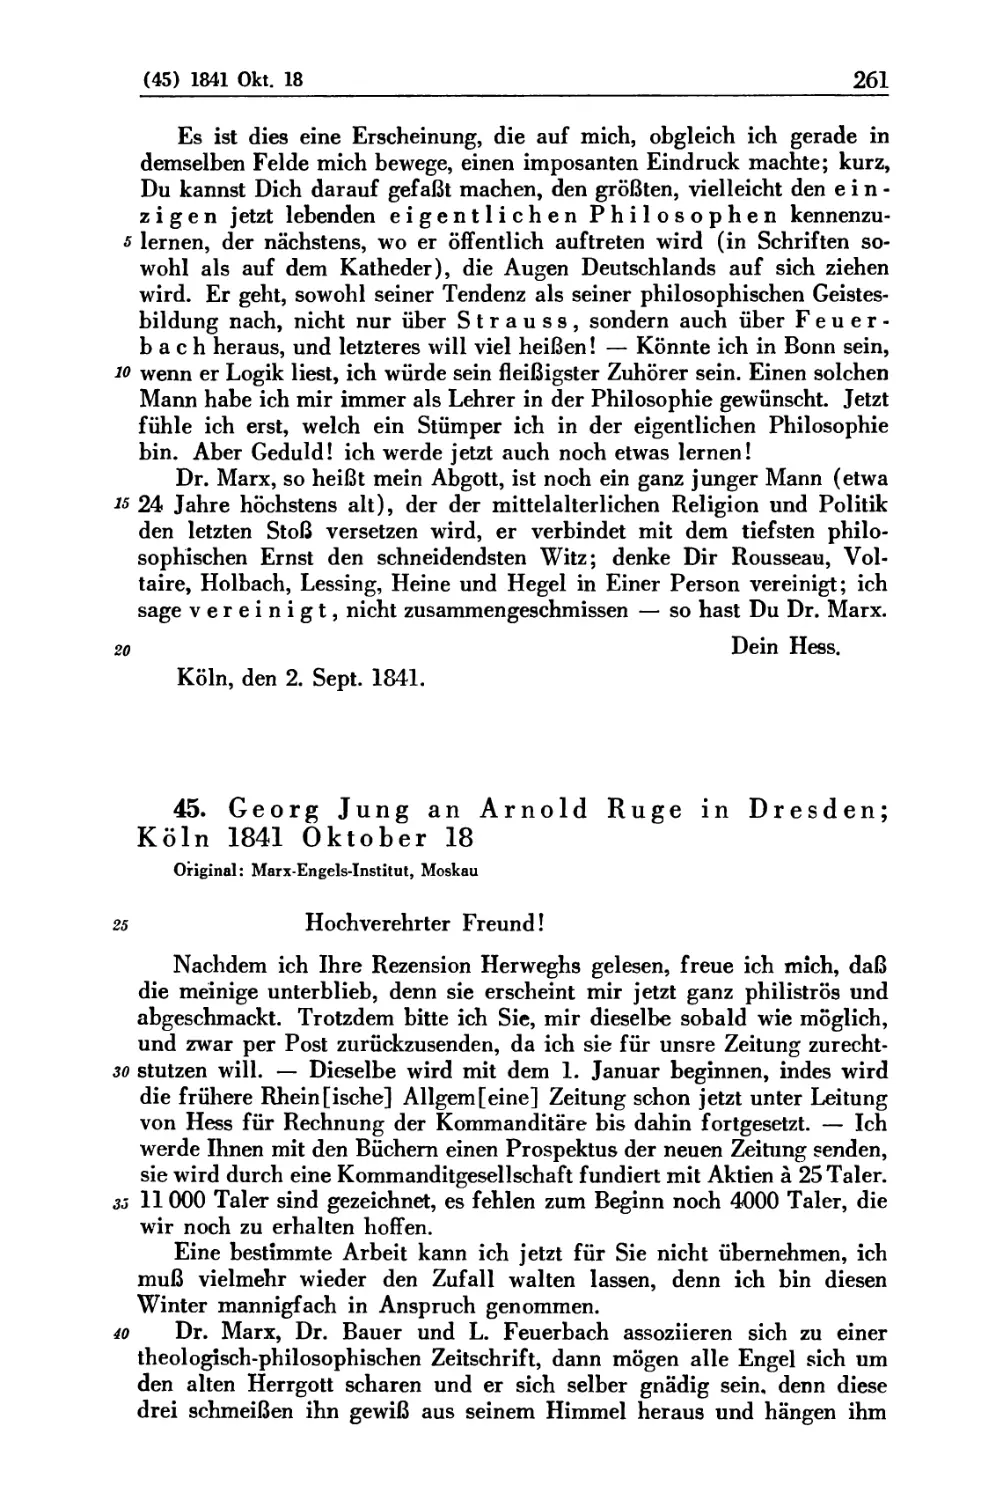 45. Georg Jung an Arnold Ruge in Dresden; Köln 1841 Oktober 18